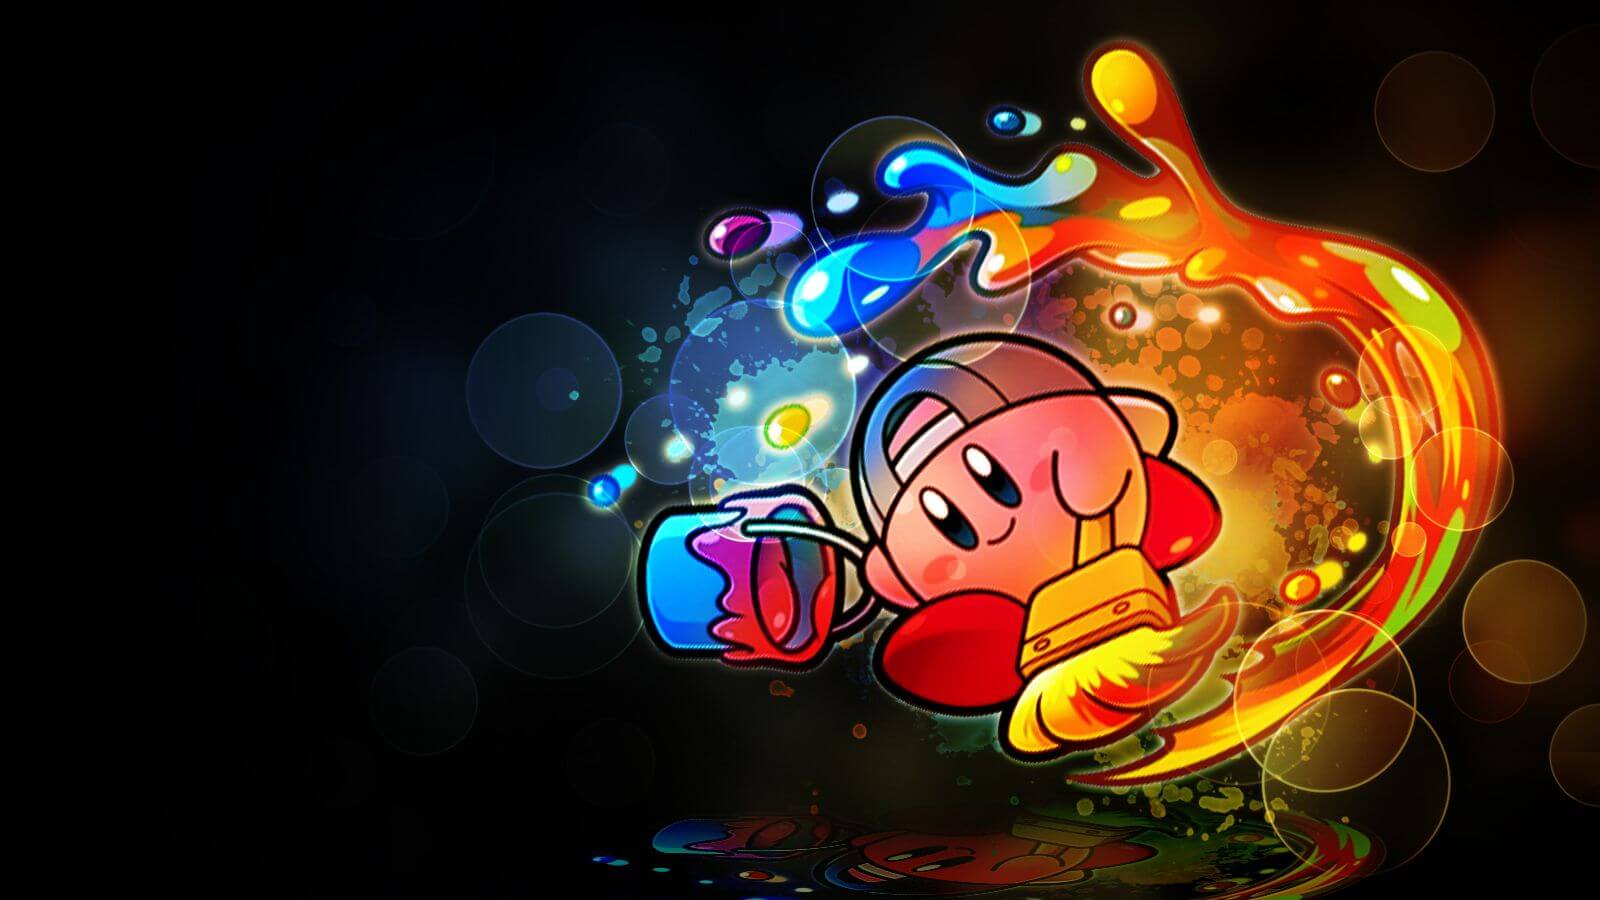 Hãy xem những hình nền Kirby đáng yêu nhất chỉ trên trang web của chúng tôi. Với hàng chục tùy chọn độ phân giải cao và nhiều kiểu dáng khác nhau, bạn chắc chắn sẽ tìm được một bức hình yêu thích để làm hình nền cho máy tính hay điện thoại của mình.